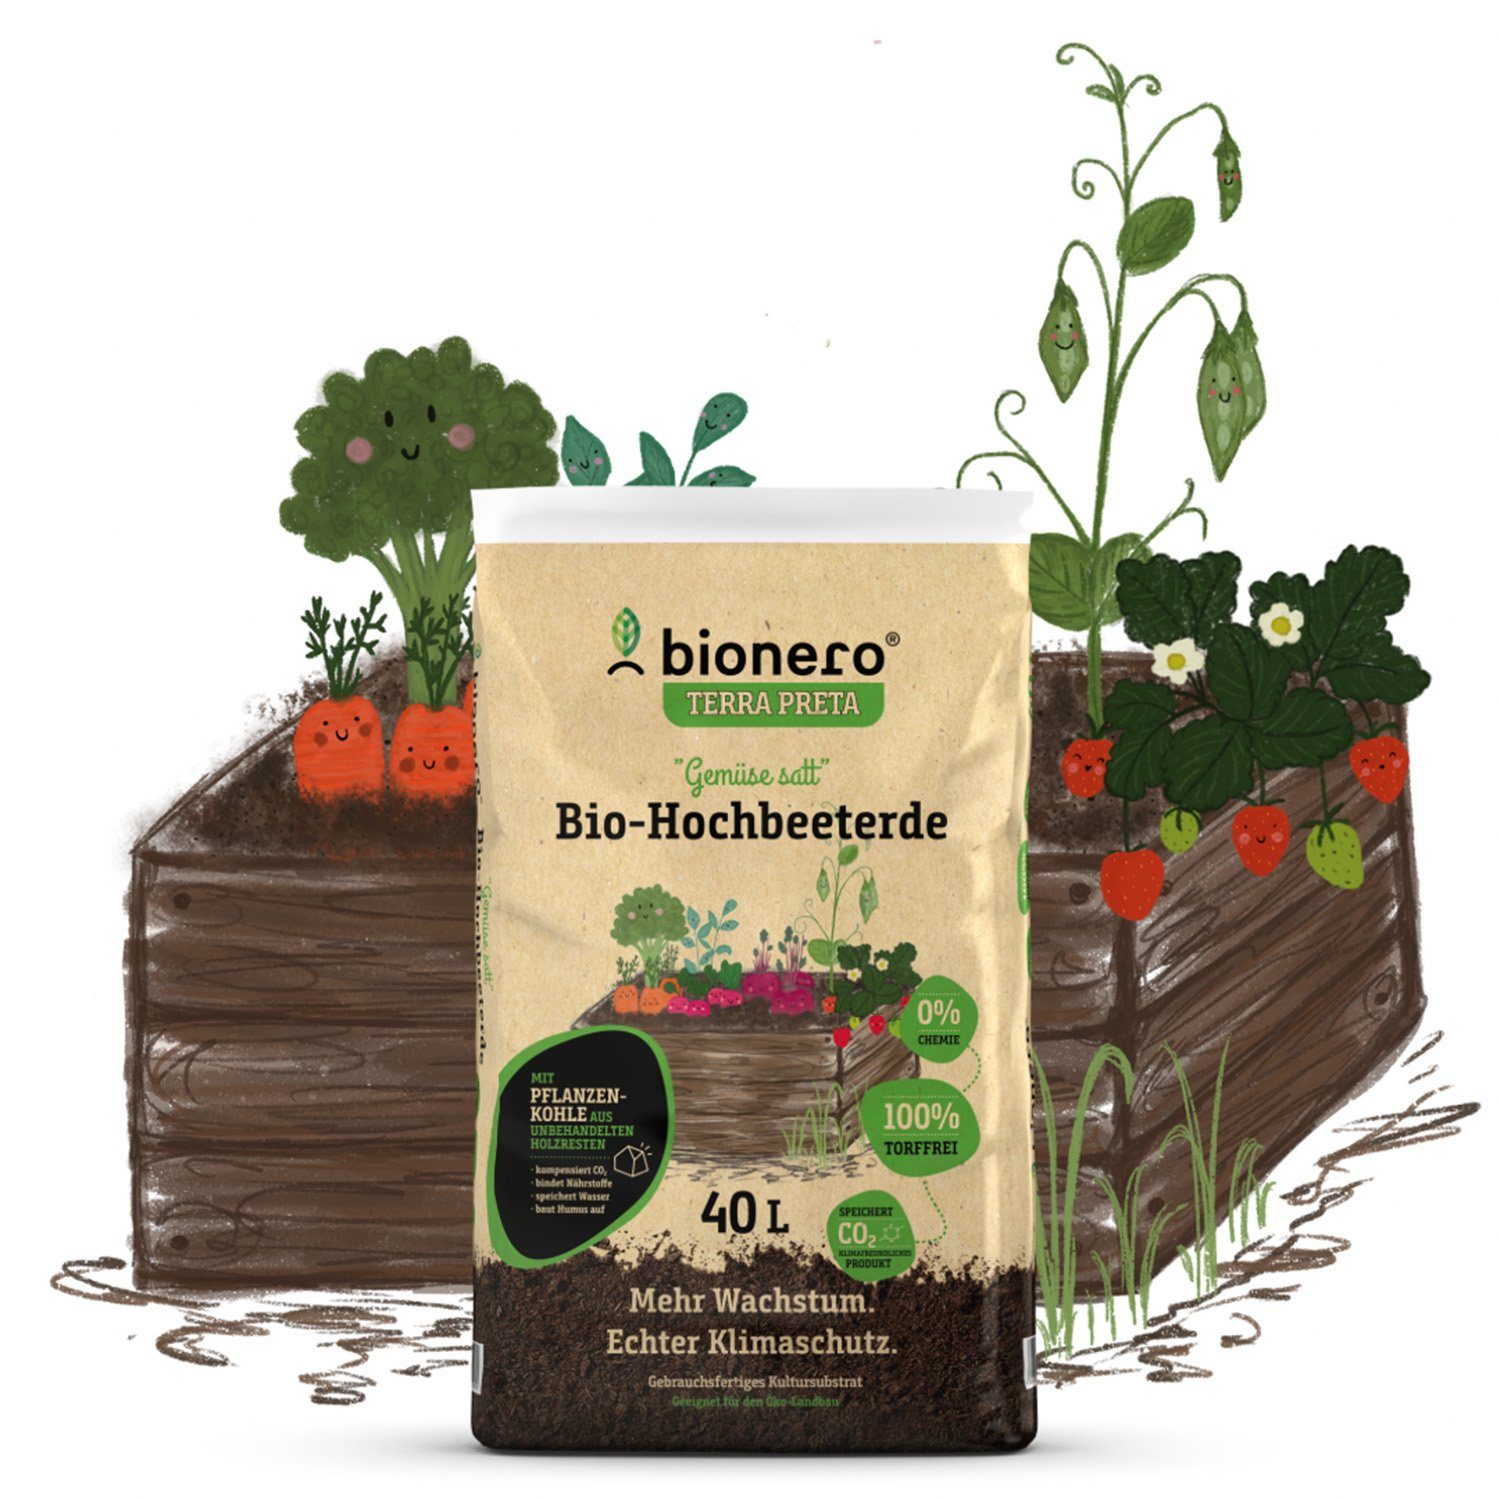 Landshop24 Bio-Erde Bio-Hochbeeterde "Gemüse satt" 40L bionero® Bioerde, mit Nährstoffen, (Sack), Terra Preta Schwarzerde